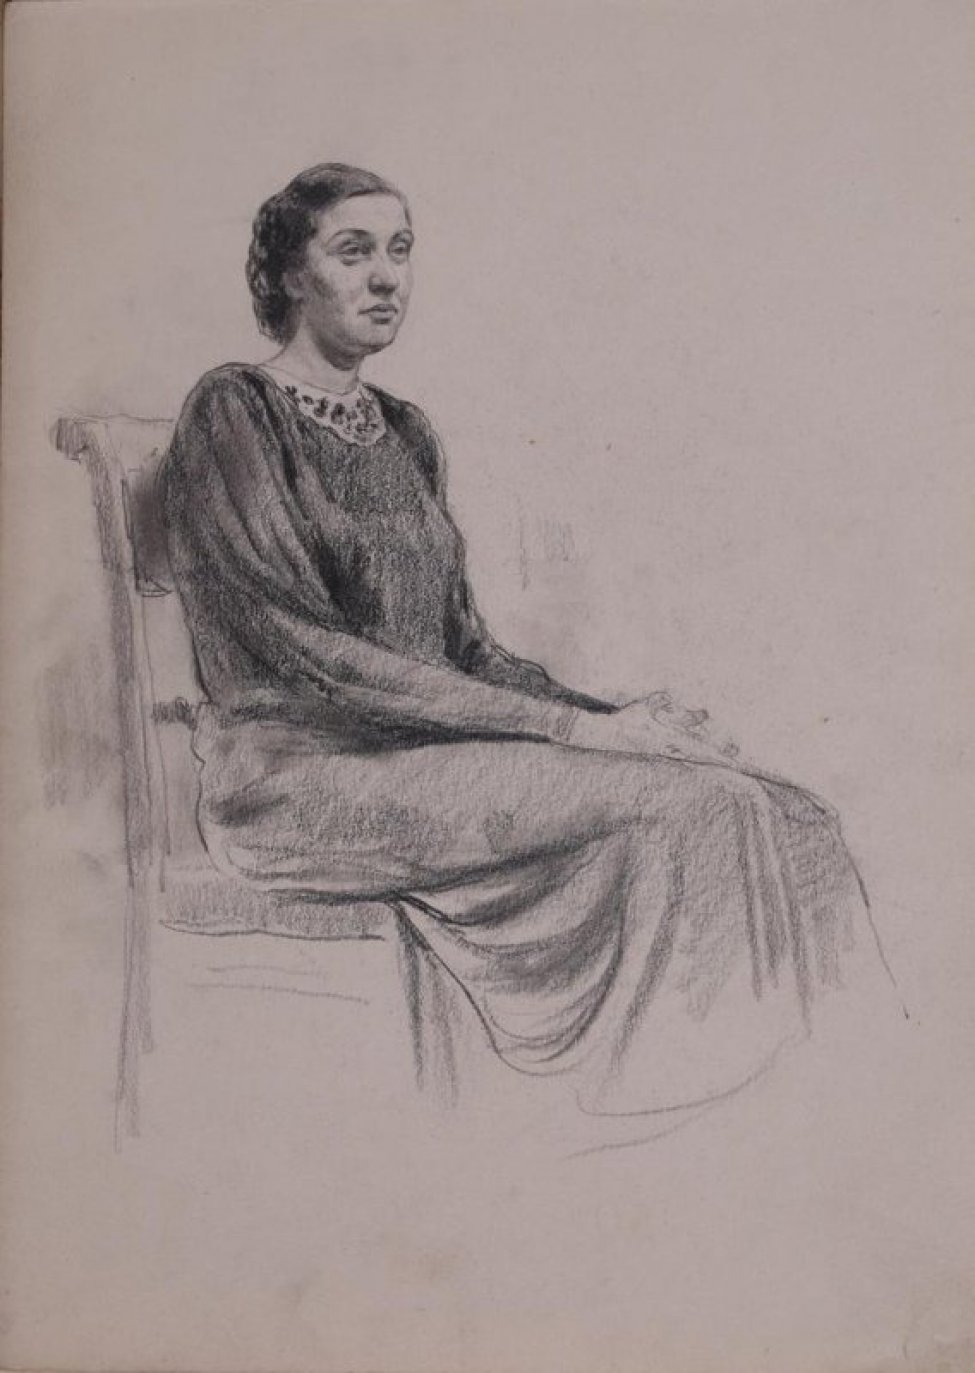 В 3/4 повороте вправо изображена сидящая на стуле женщина в длинном платье с белым воротником; руки сложены на коленях.